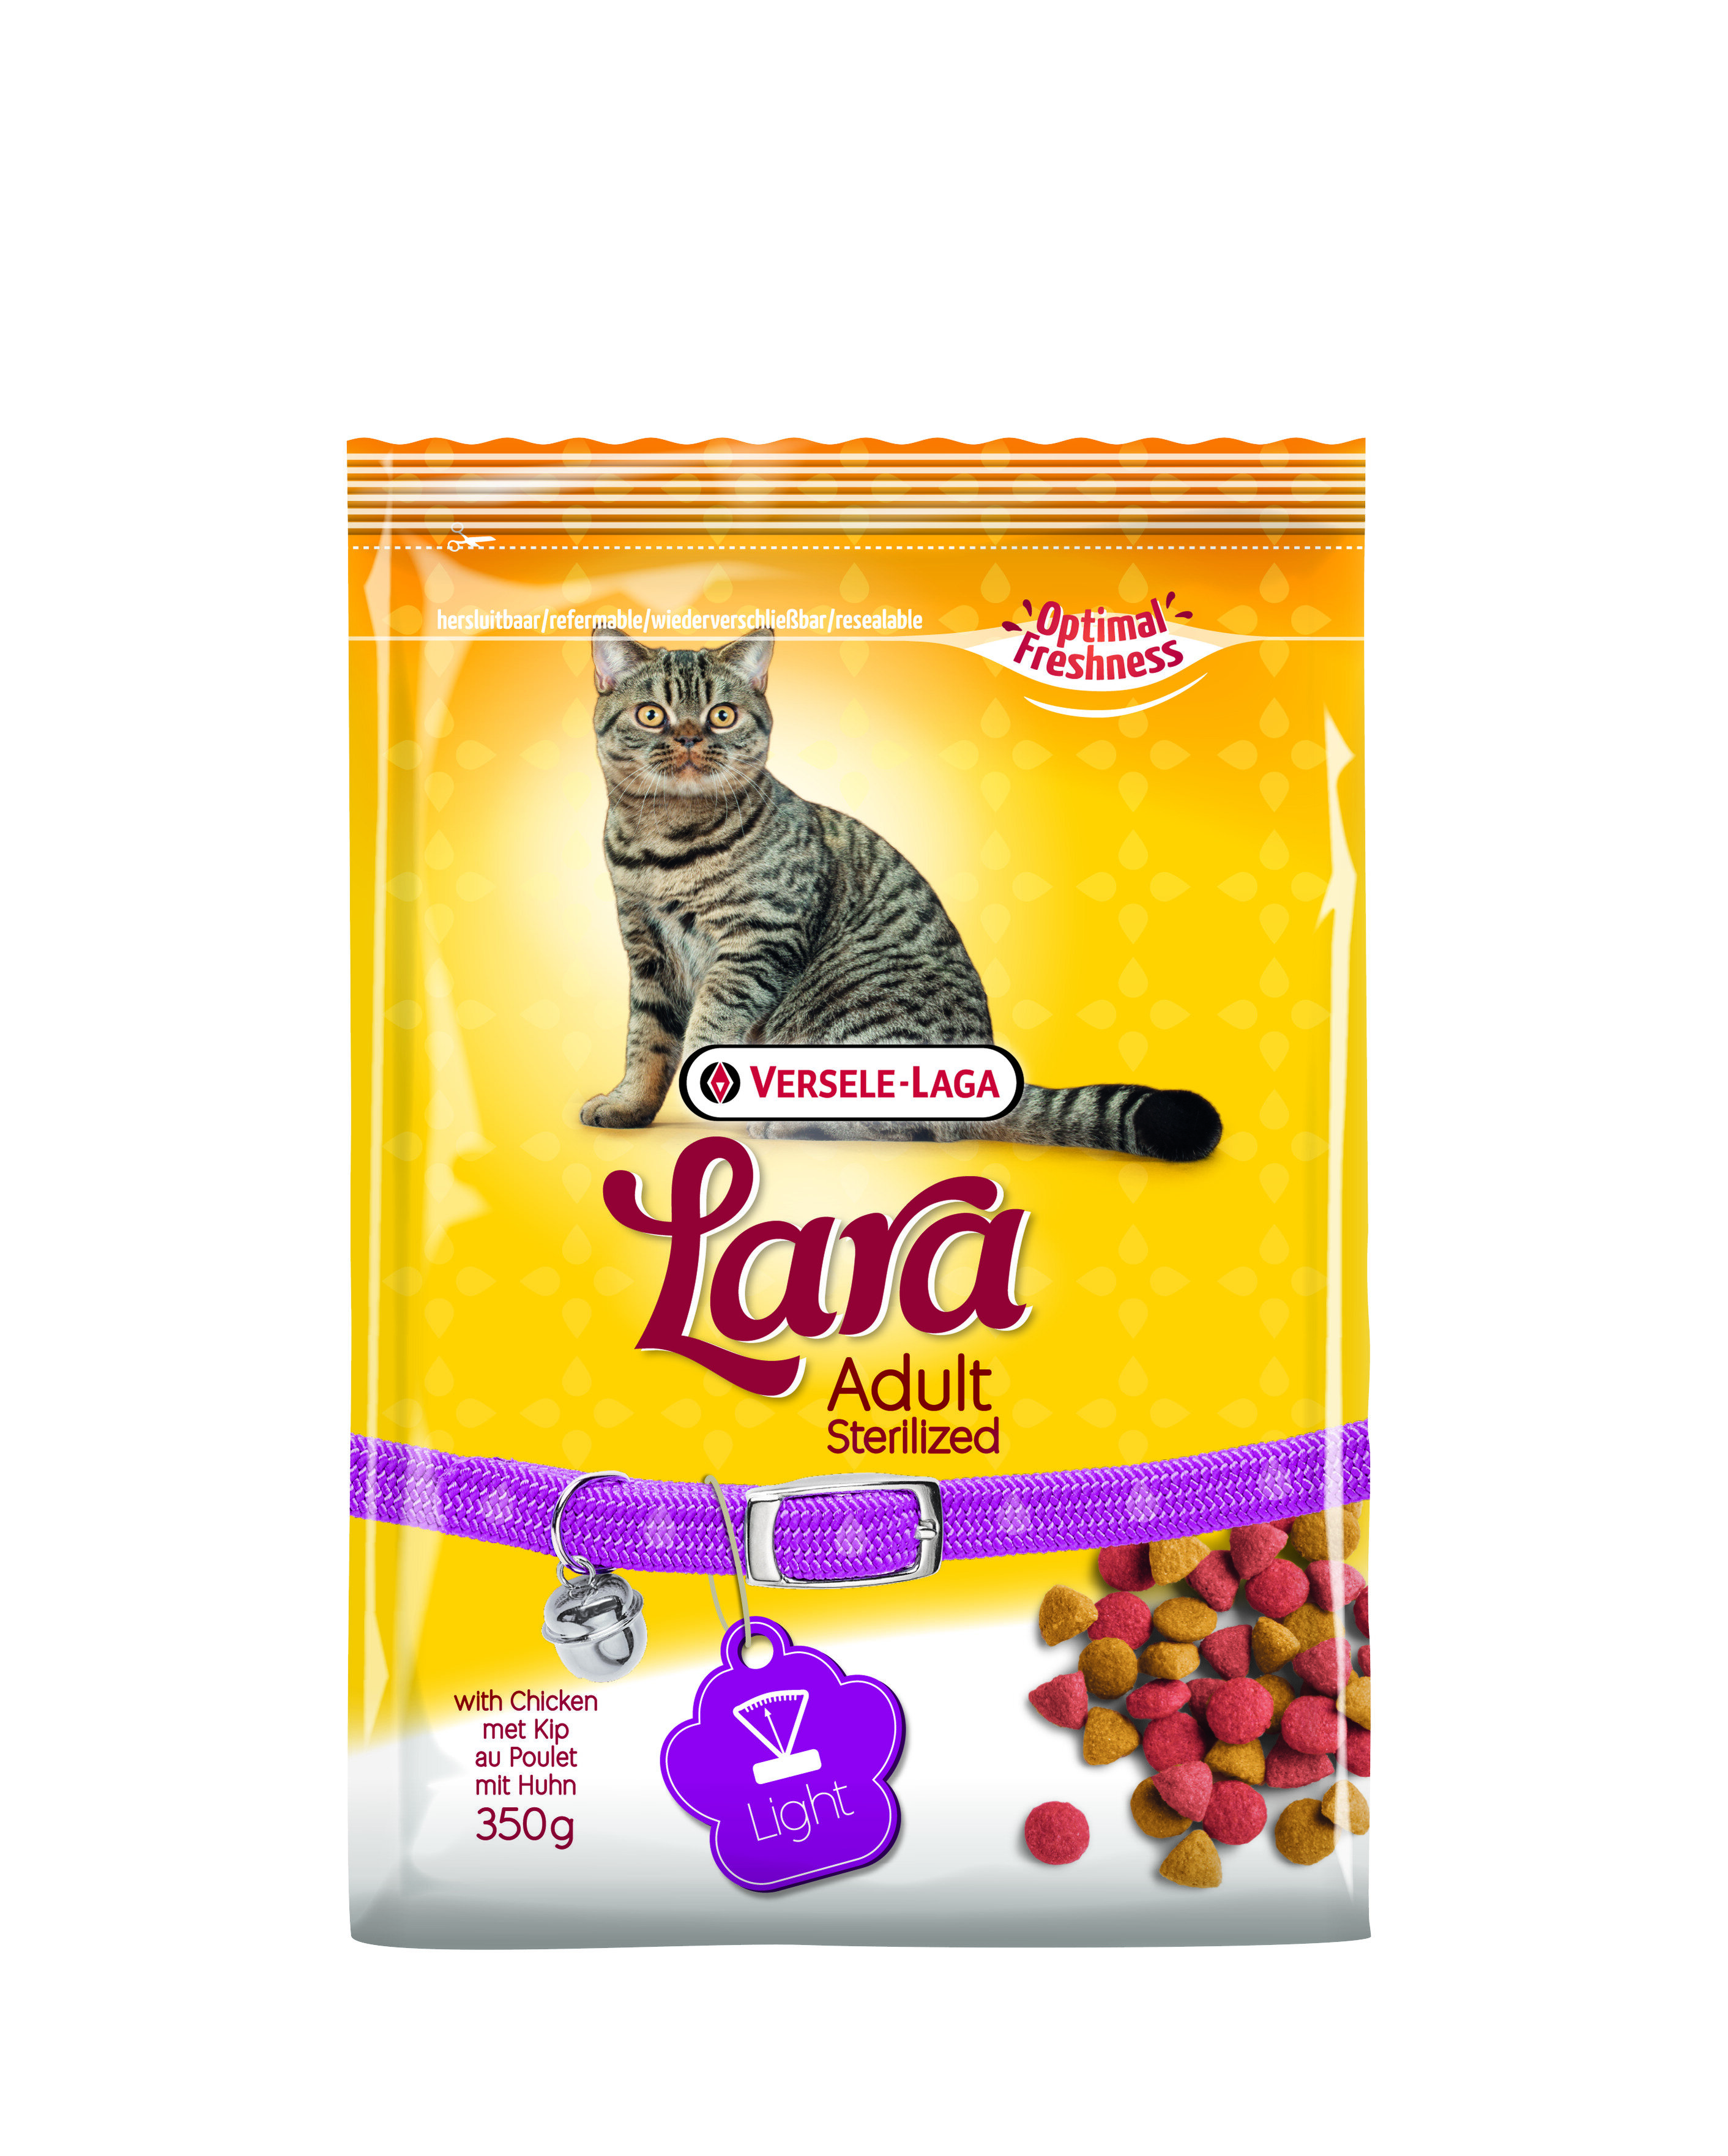 Versele Laga Lara Adult Sterilized Cat Food 5 x 350g